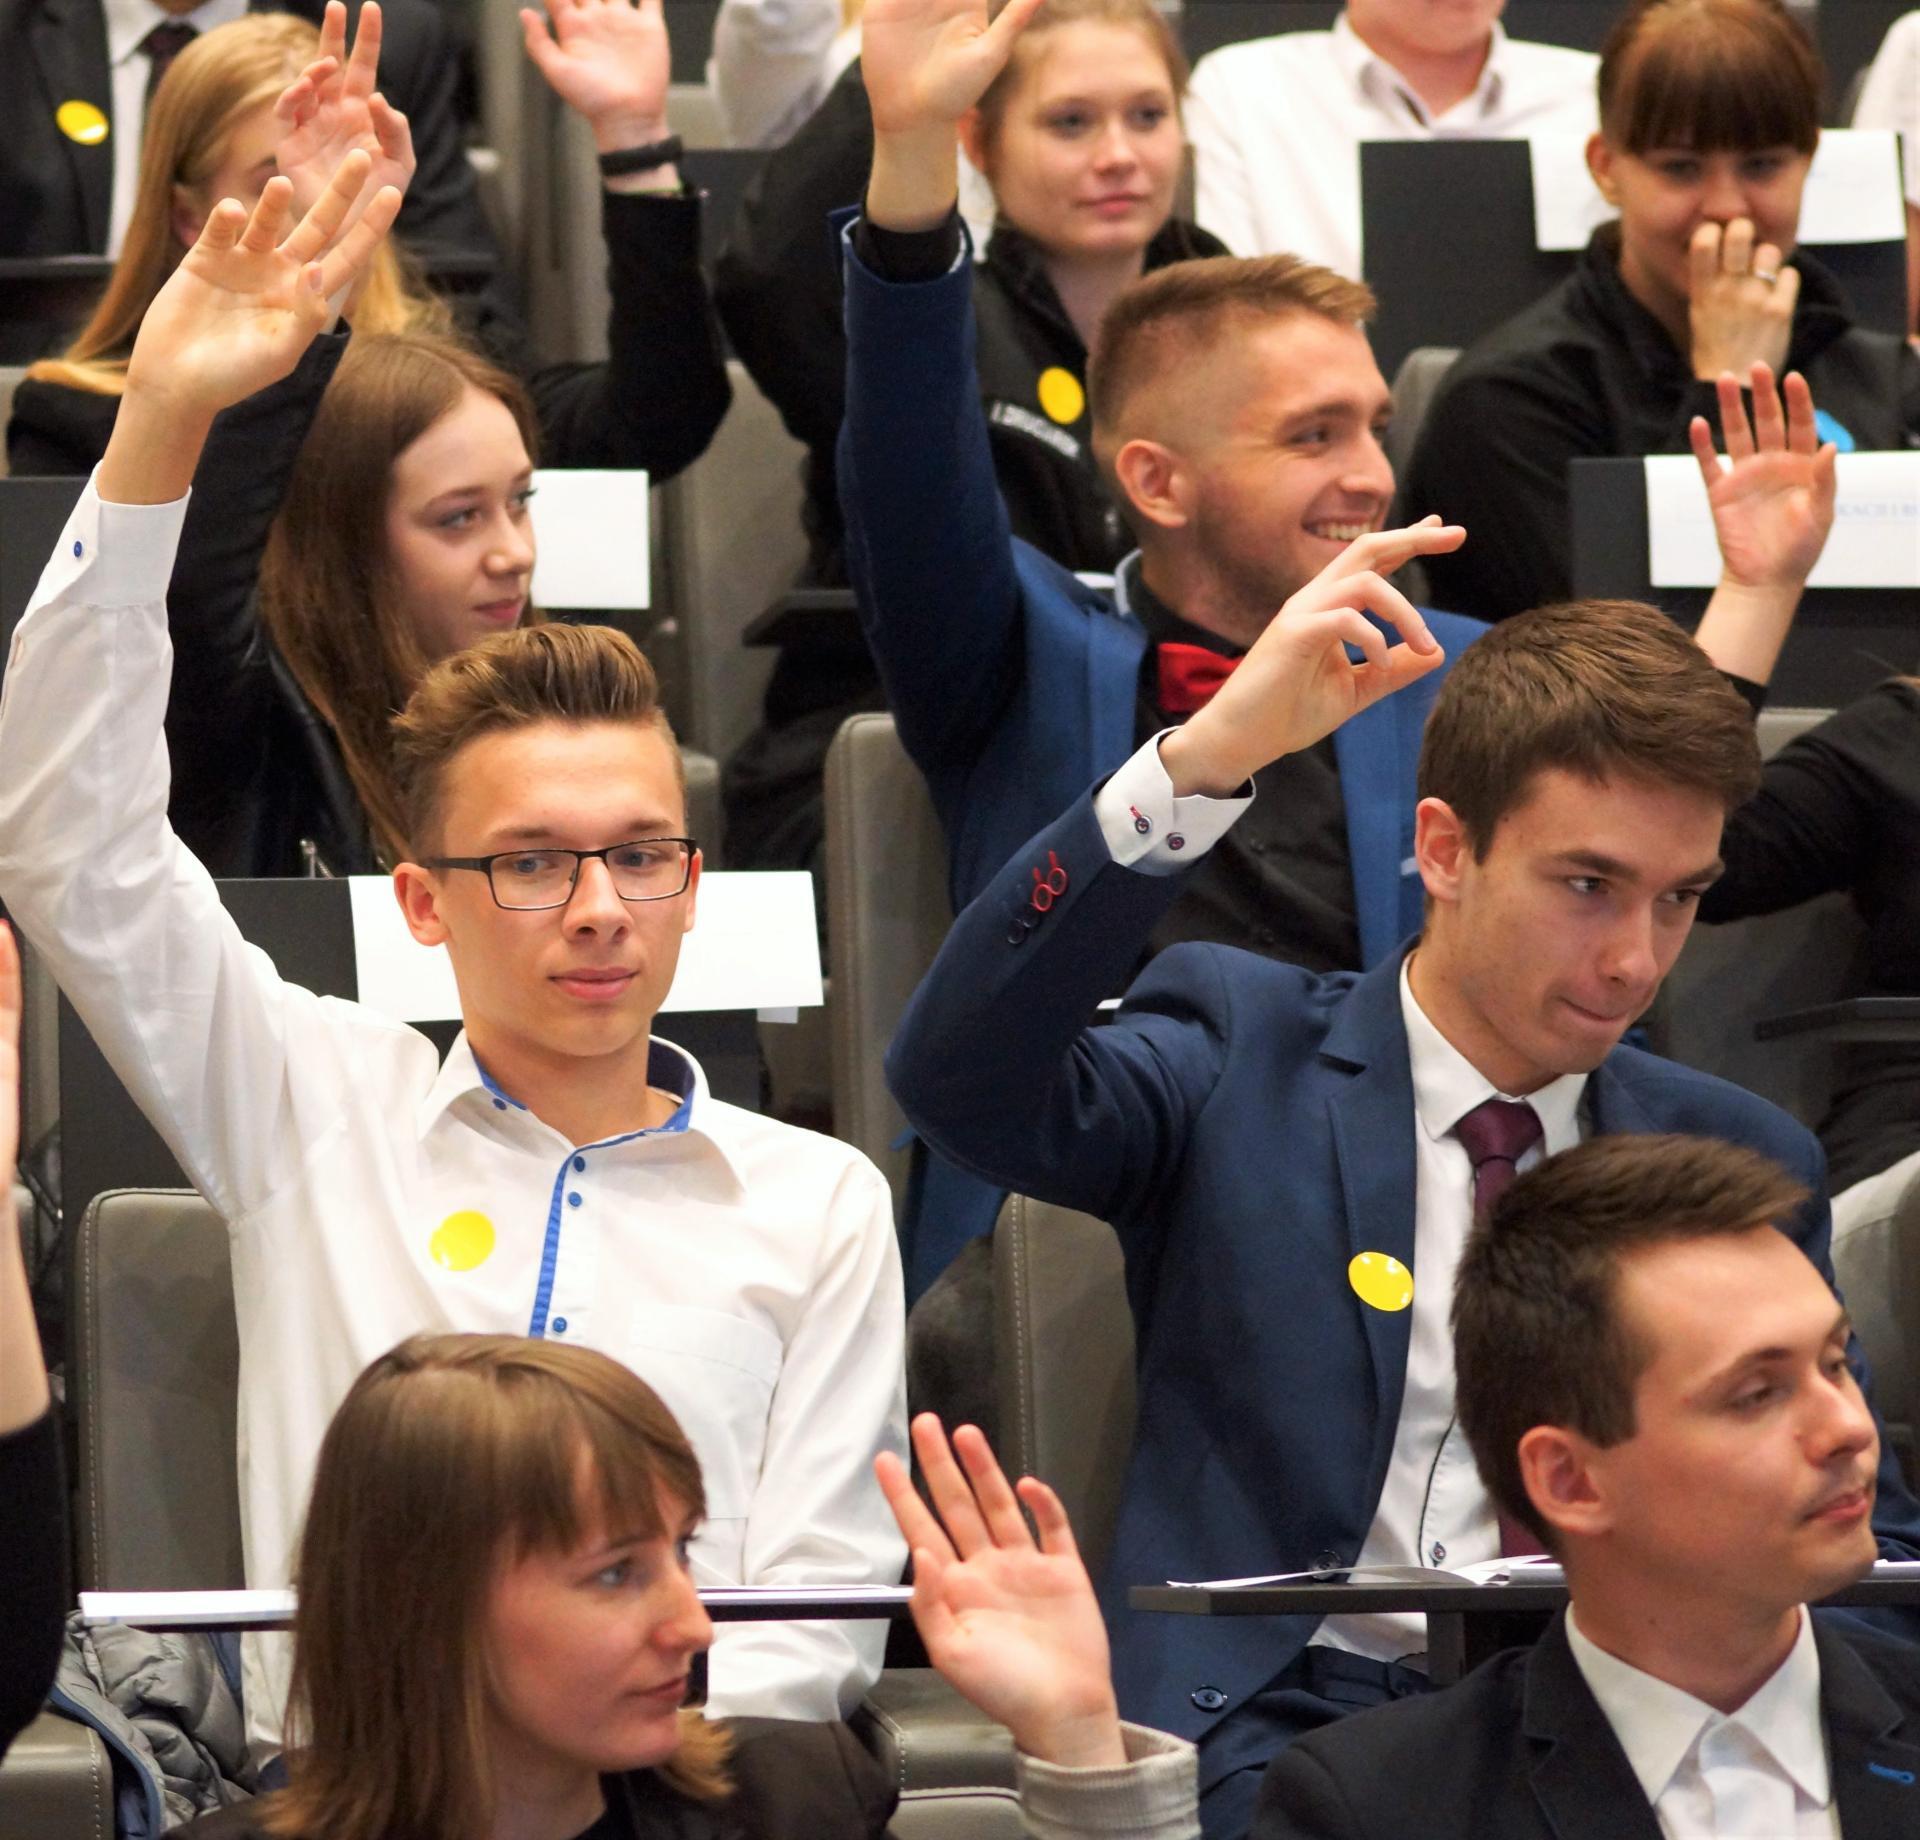 Na fotografii widać młodych ludzi siedzących na sali posiedzeń i podnoszących rękę do góry - najprawdopodobniej biorą udział w głosowaniu.